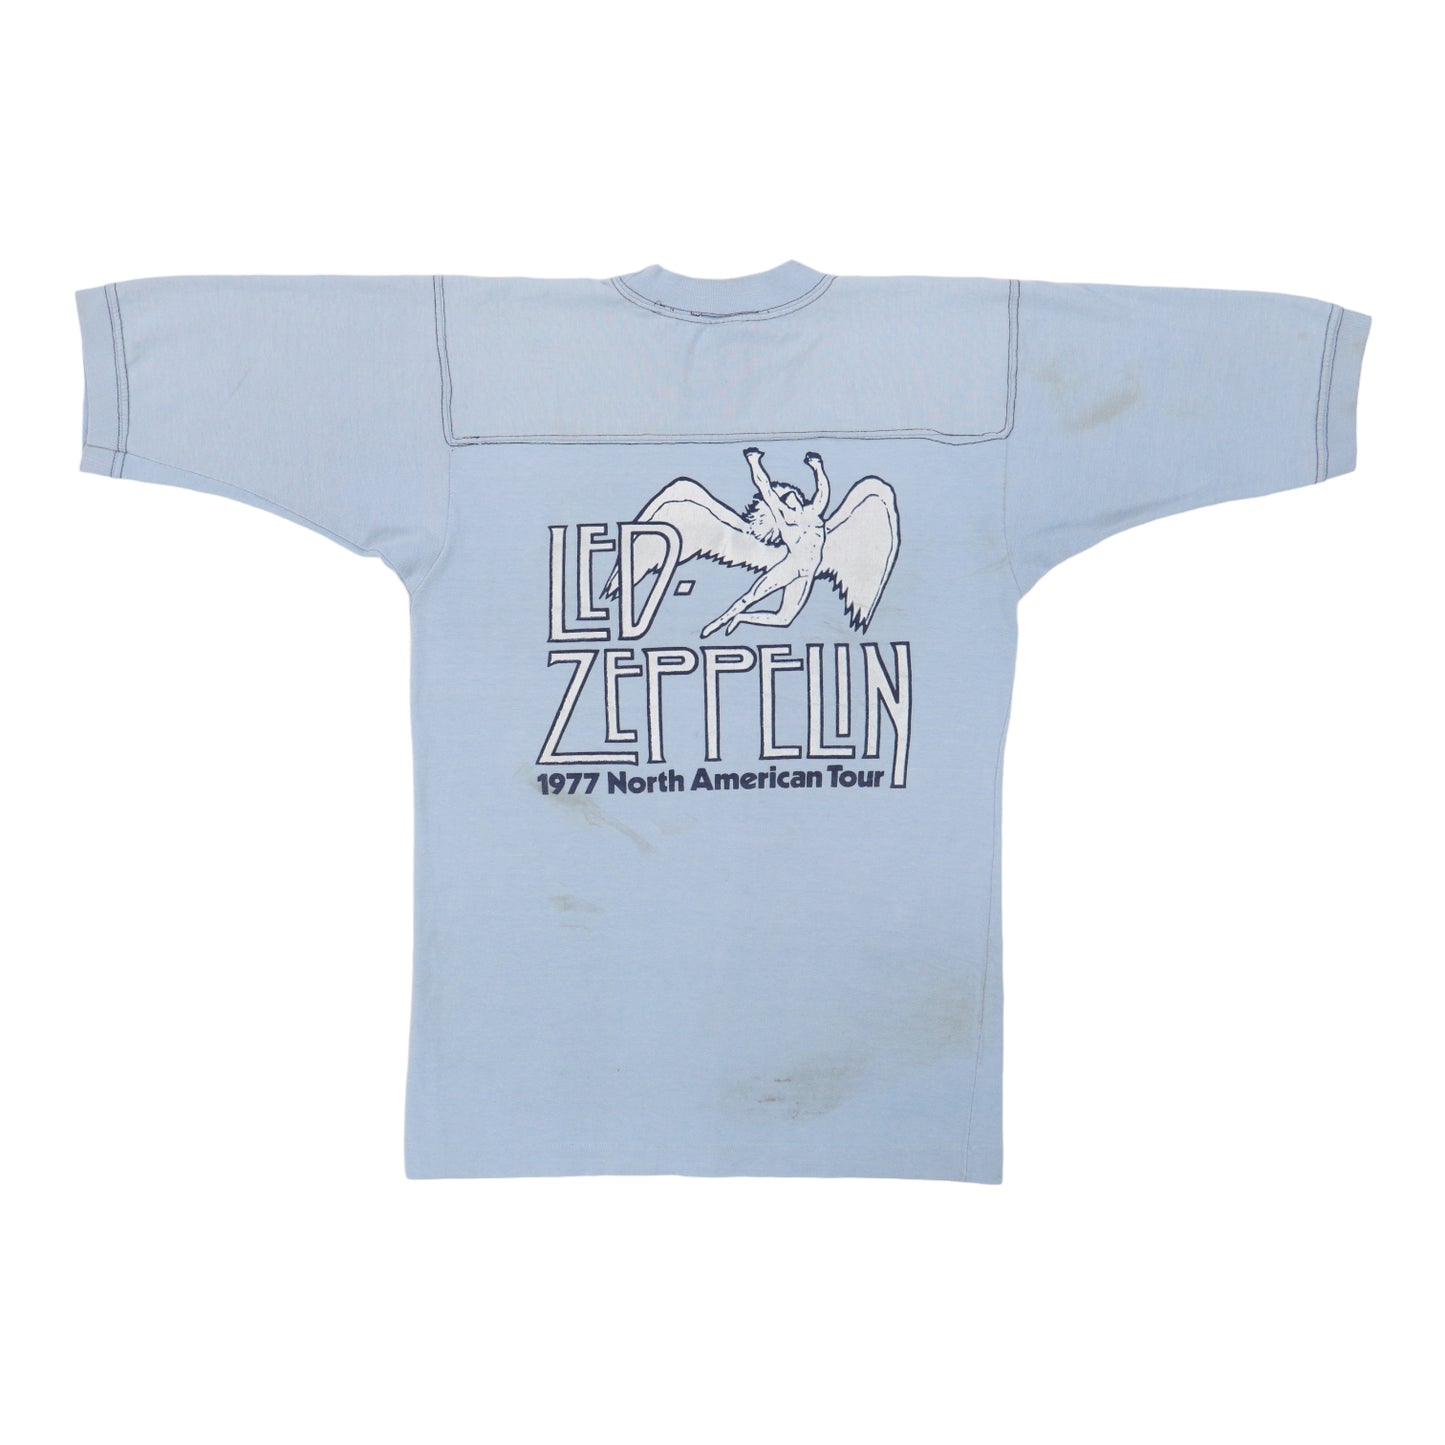 1977 Led Zeppelin Concerts West Crew Tour Shirt